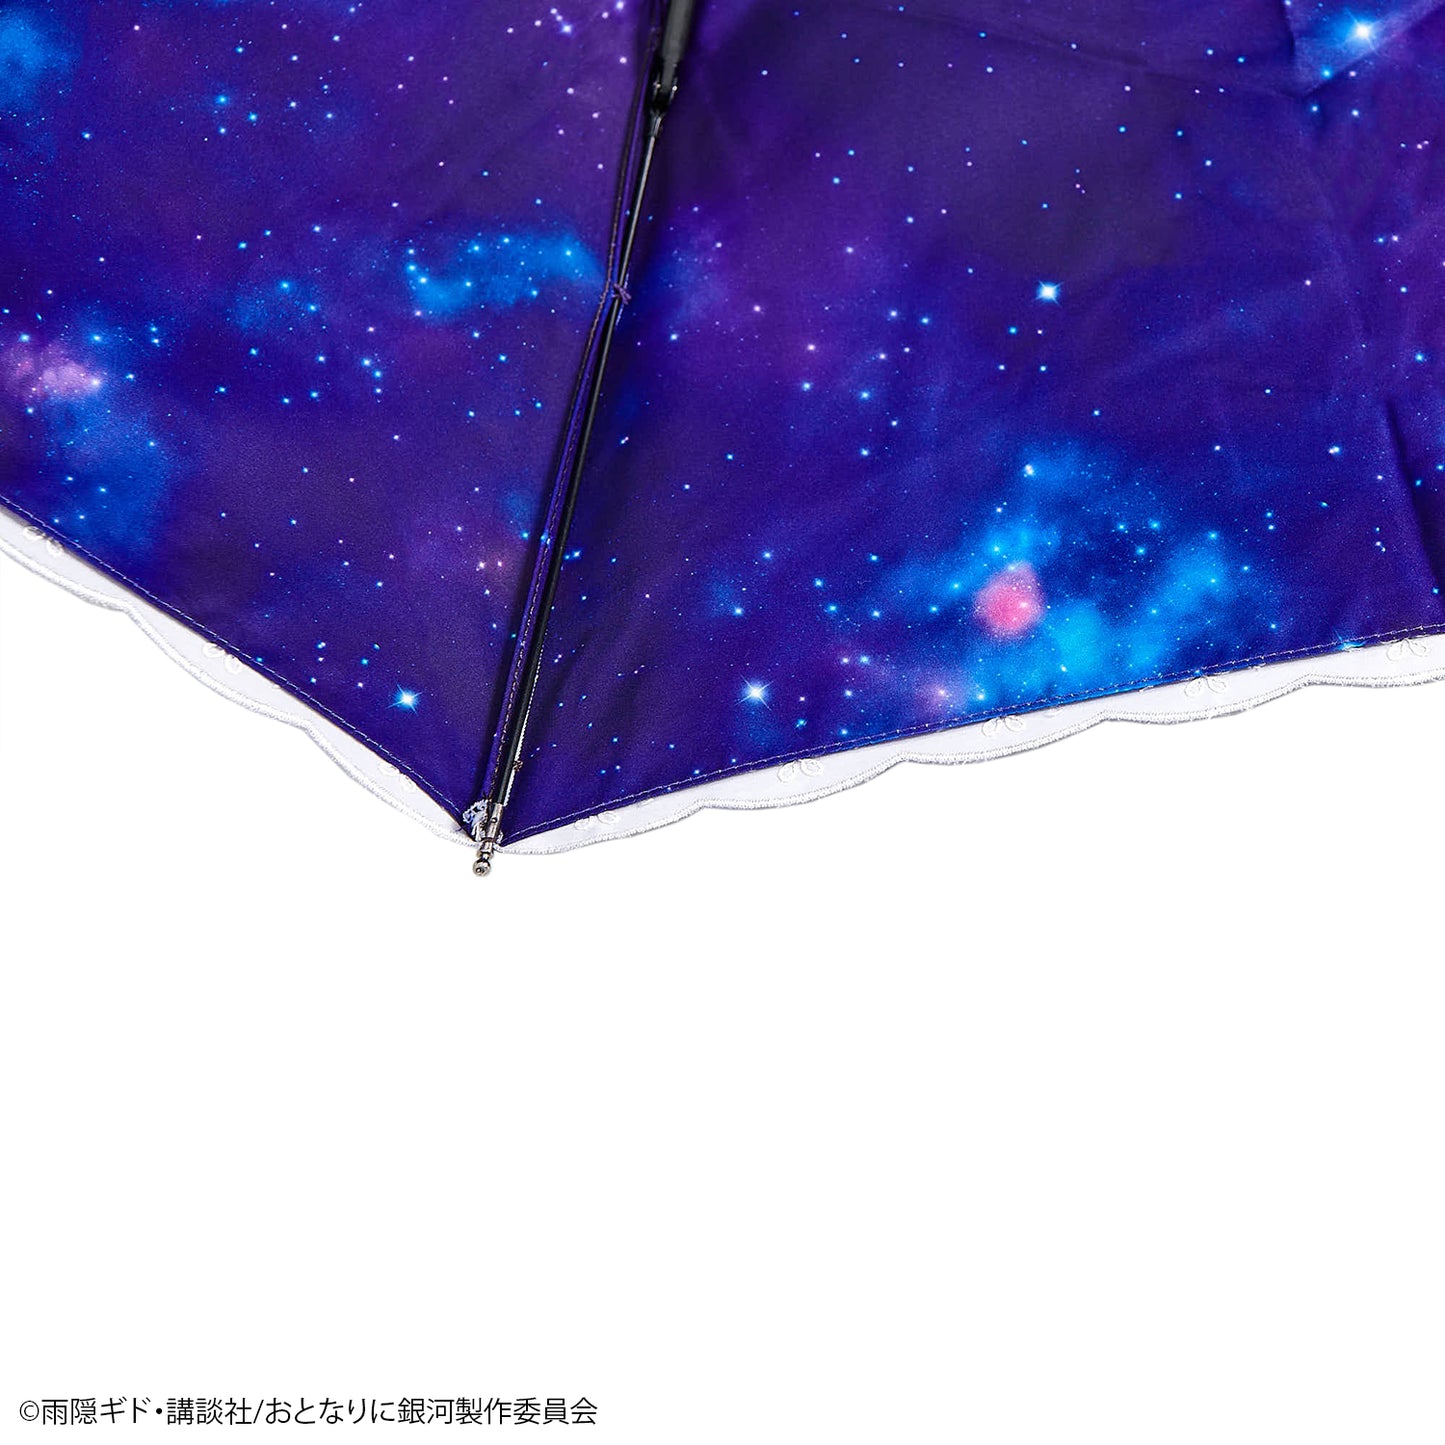 『おとなりに銀河』UVカット機能付き晴雨兼用折りたたみ傘【予約商品】